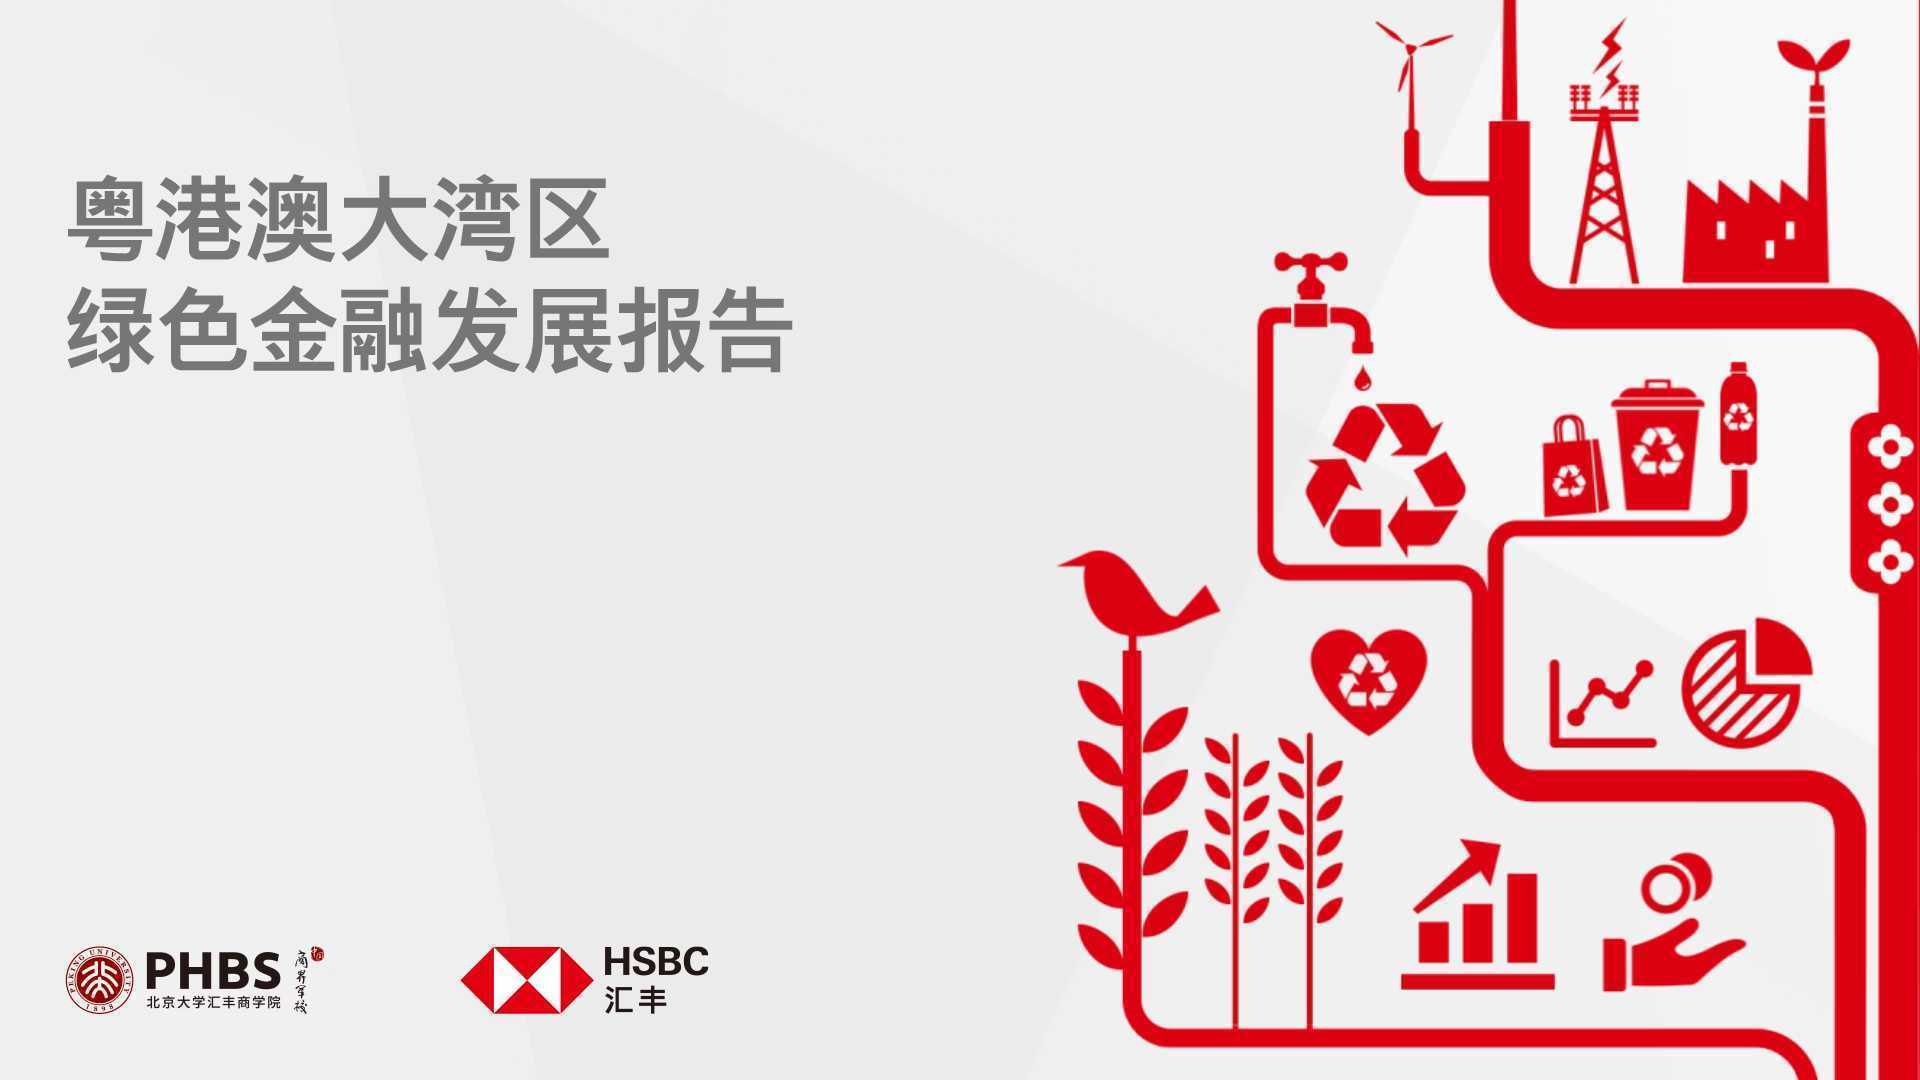 HSBC 汇丰银行 - 绿色金融